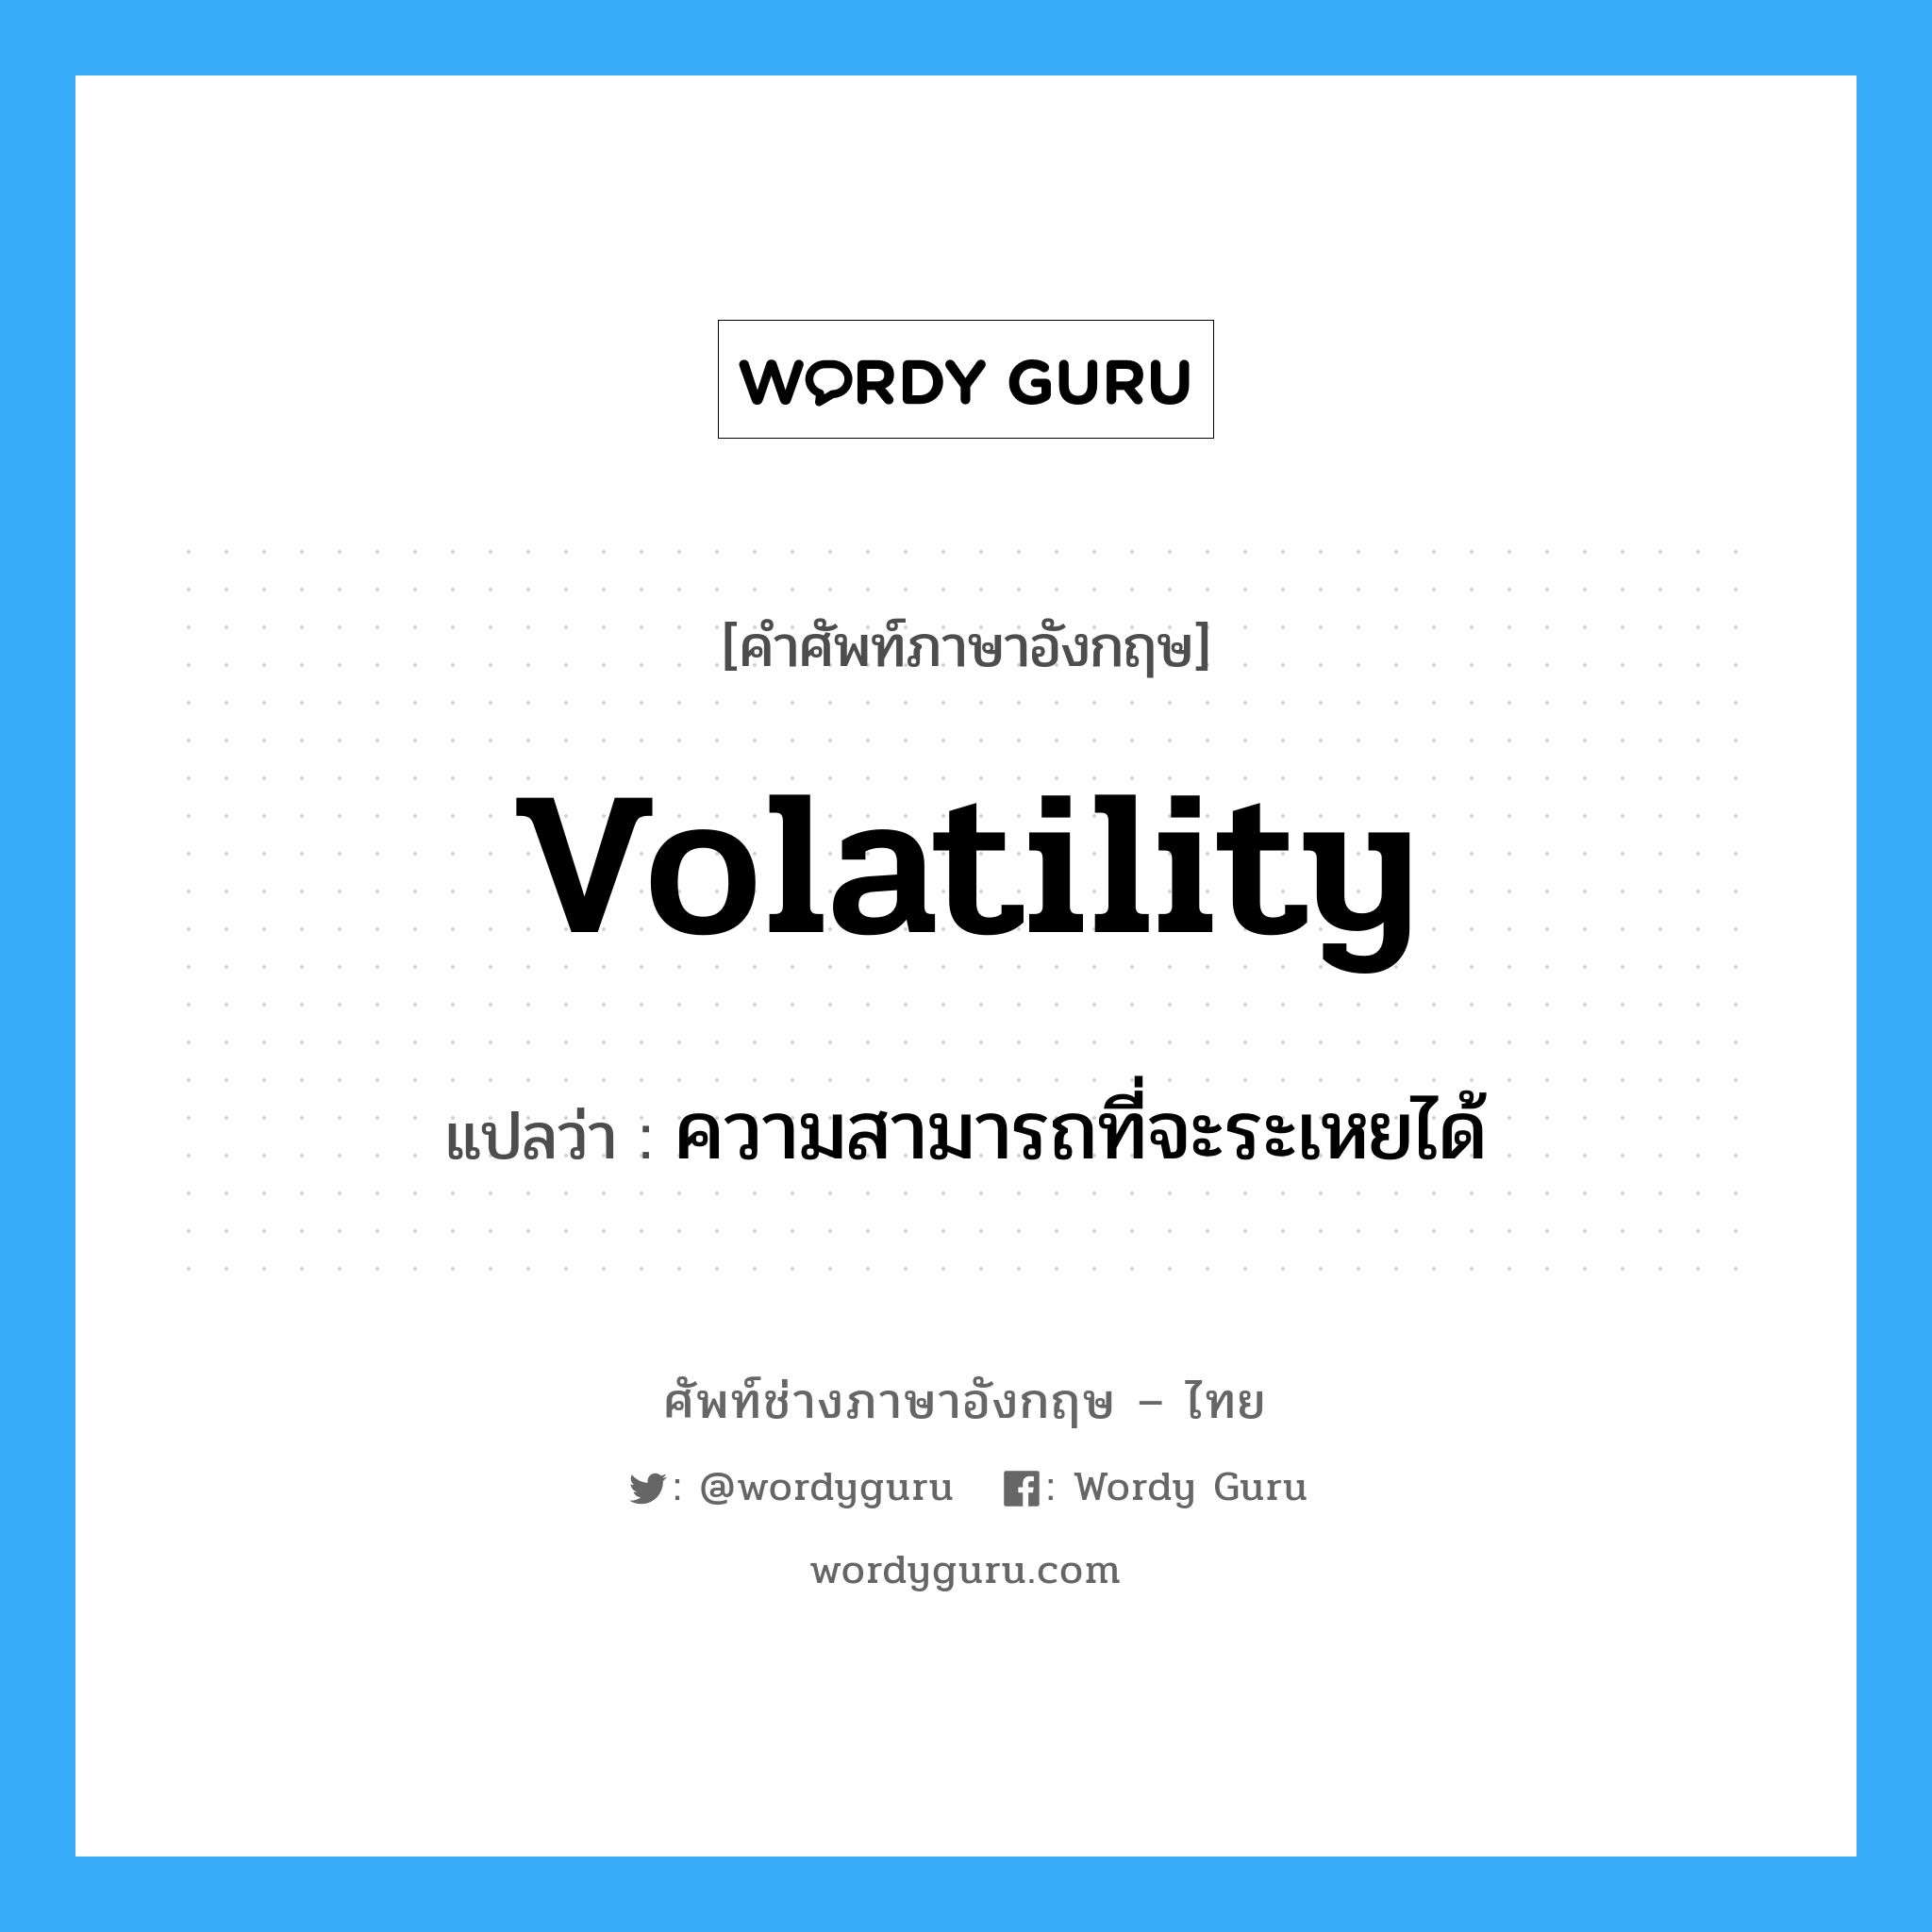 ความสามารถที่จะระเหยได้ ภาษาอังกฤษ?, คำศัพท์ช่างภาษาอังกฤษ - ไทย ความสามารถที่จะระเหยได้ คำศัพท์ภาษาอังกฤษ ความสามารถที่จะระเหยได้ แปลว่า volatility